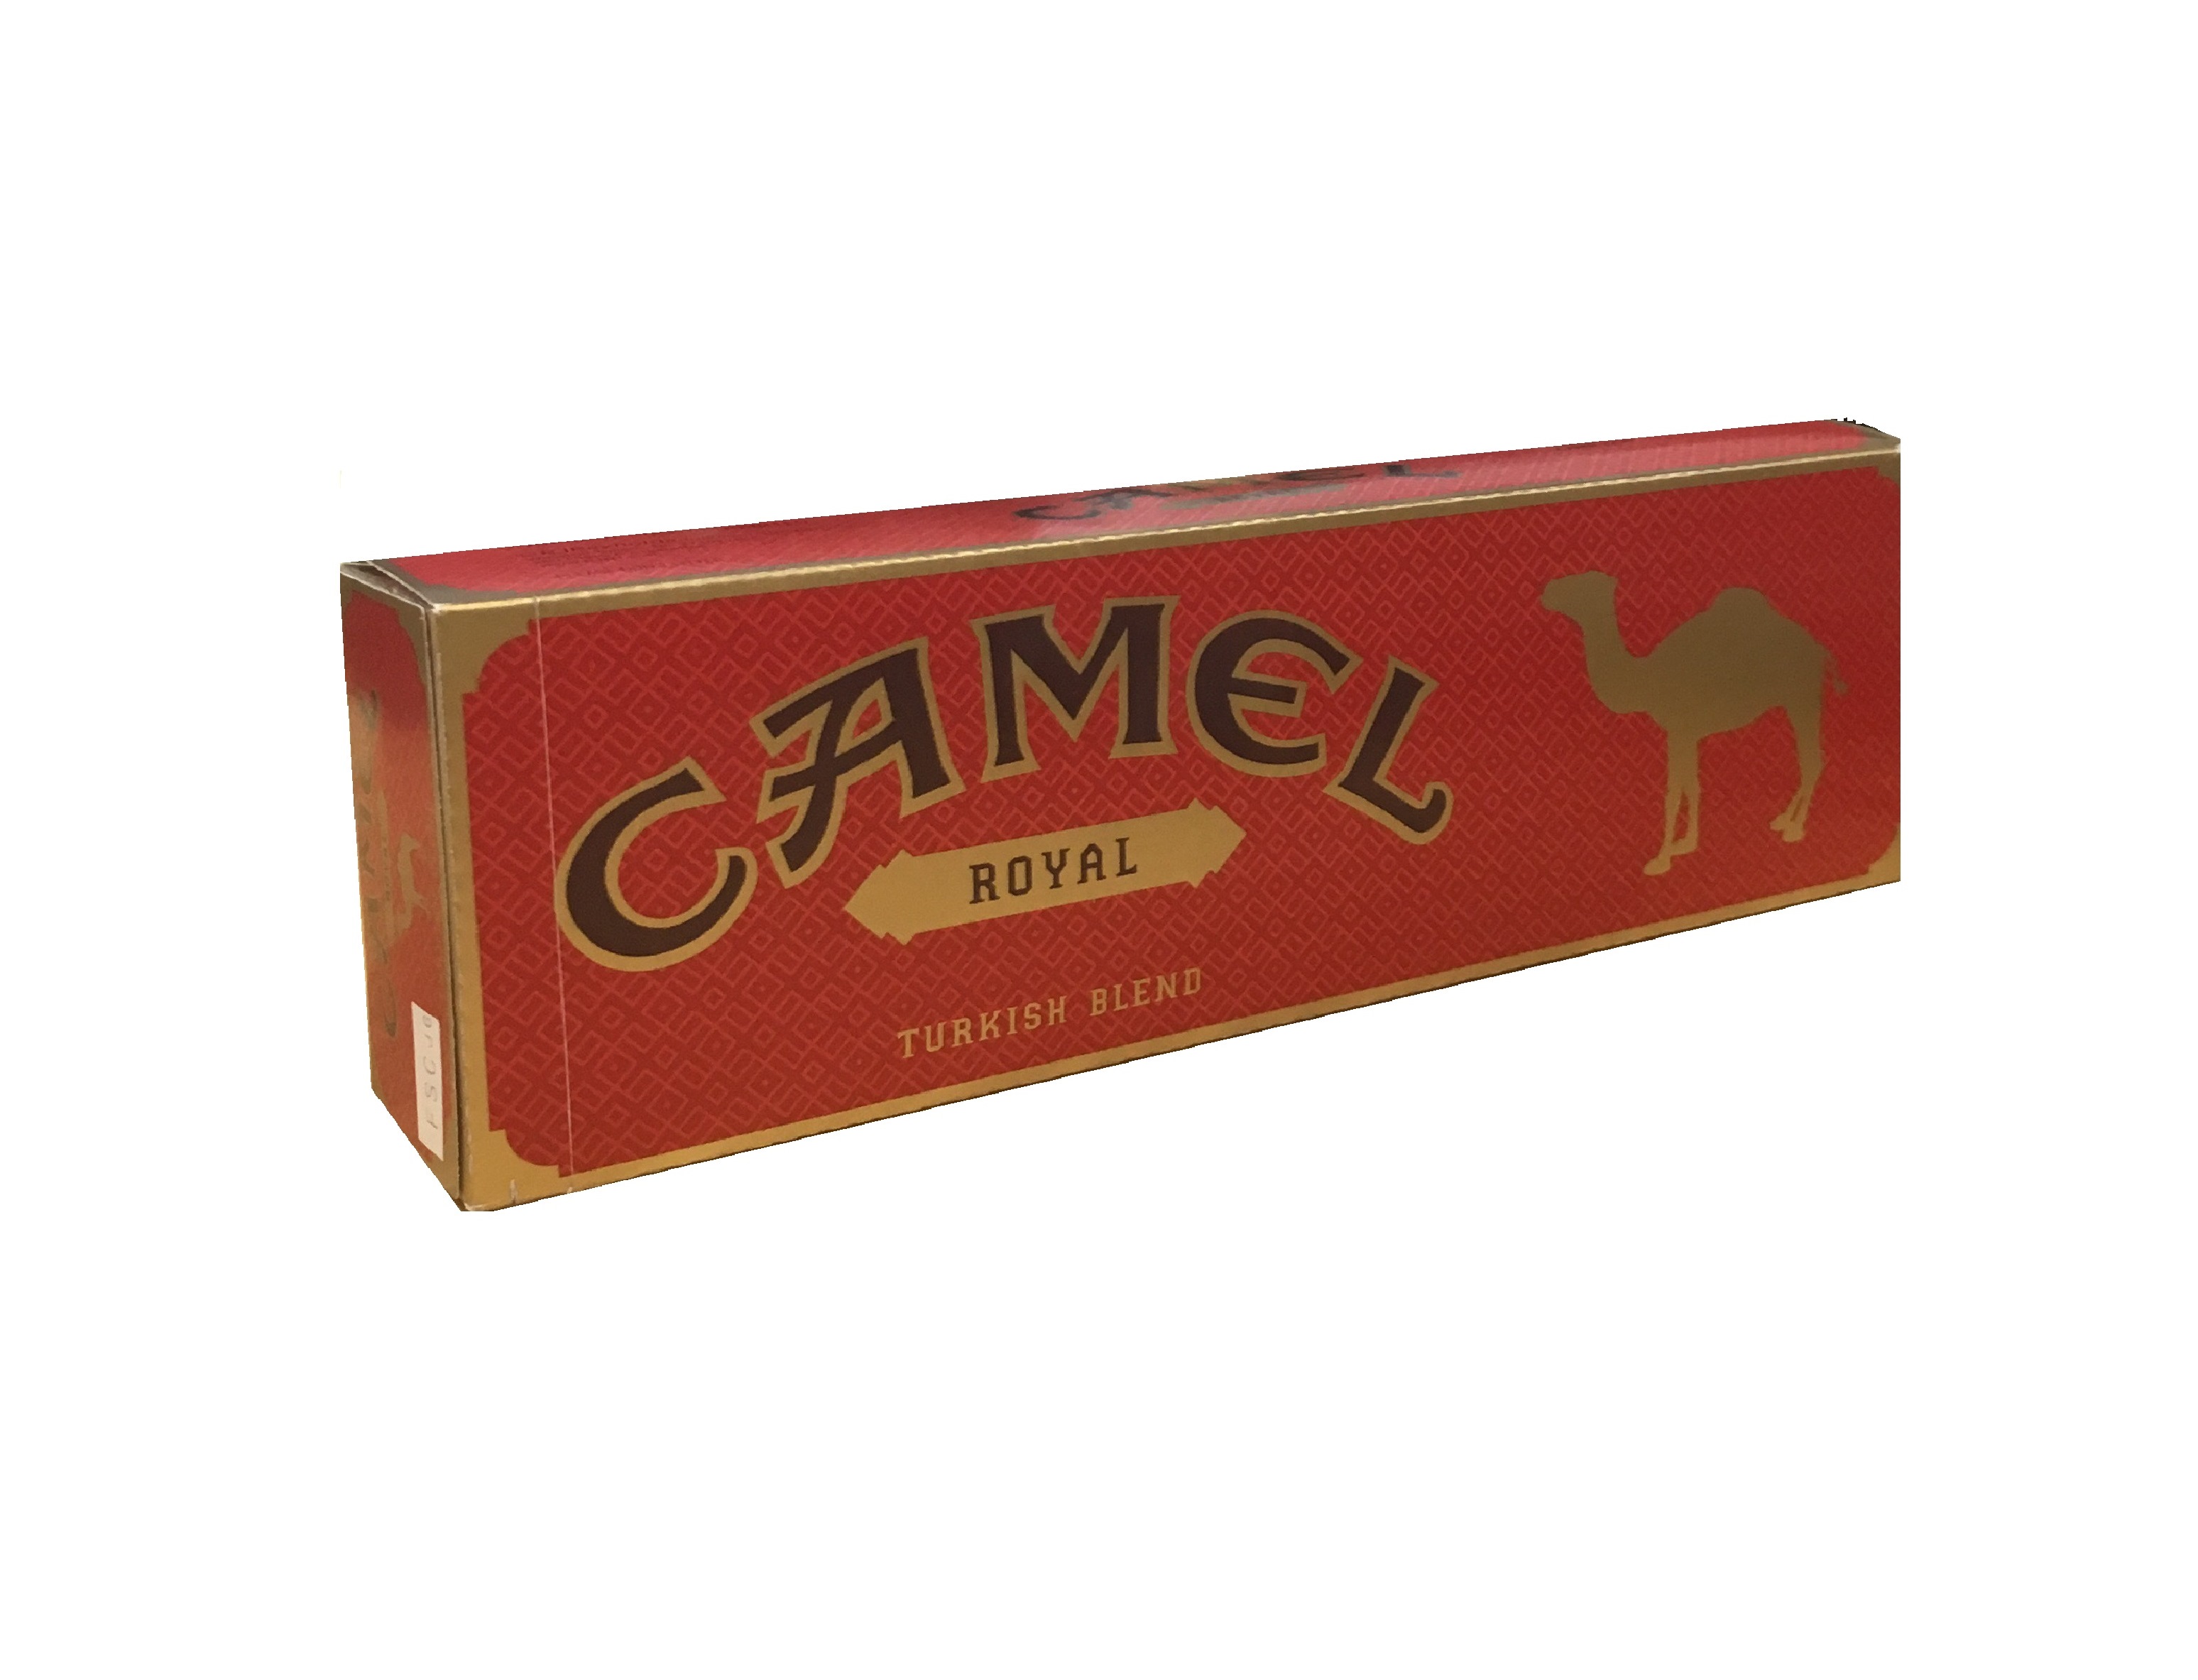 Camel royal box